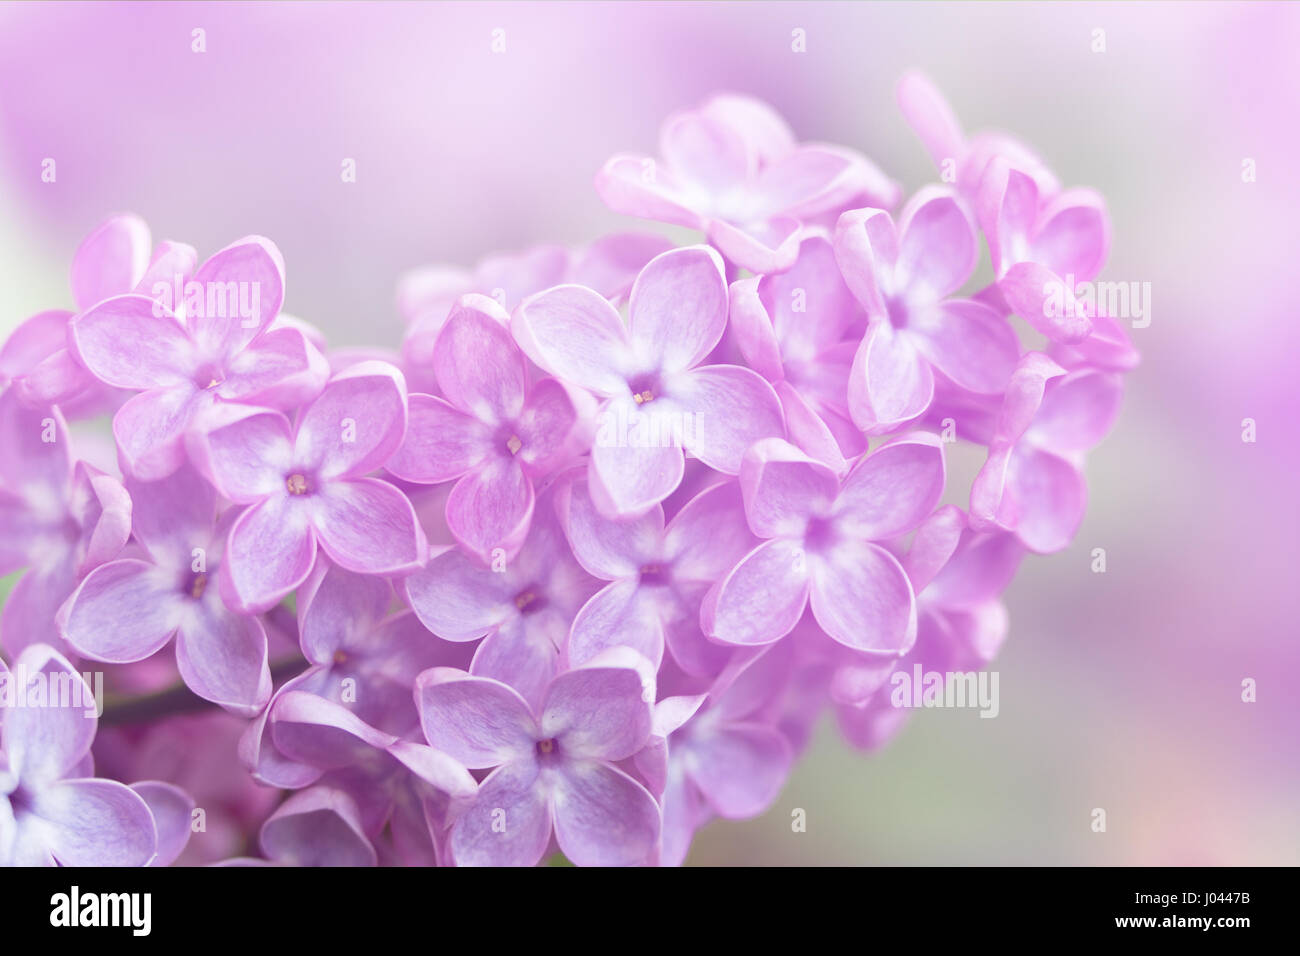 Image en gros plan du printemps fleurs violet lilas, soft abstract floral background Banque D'Images